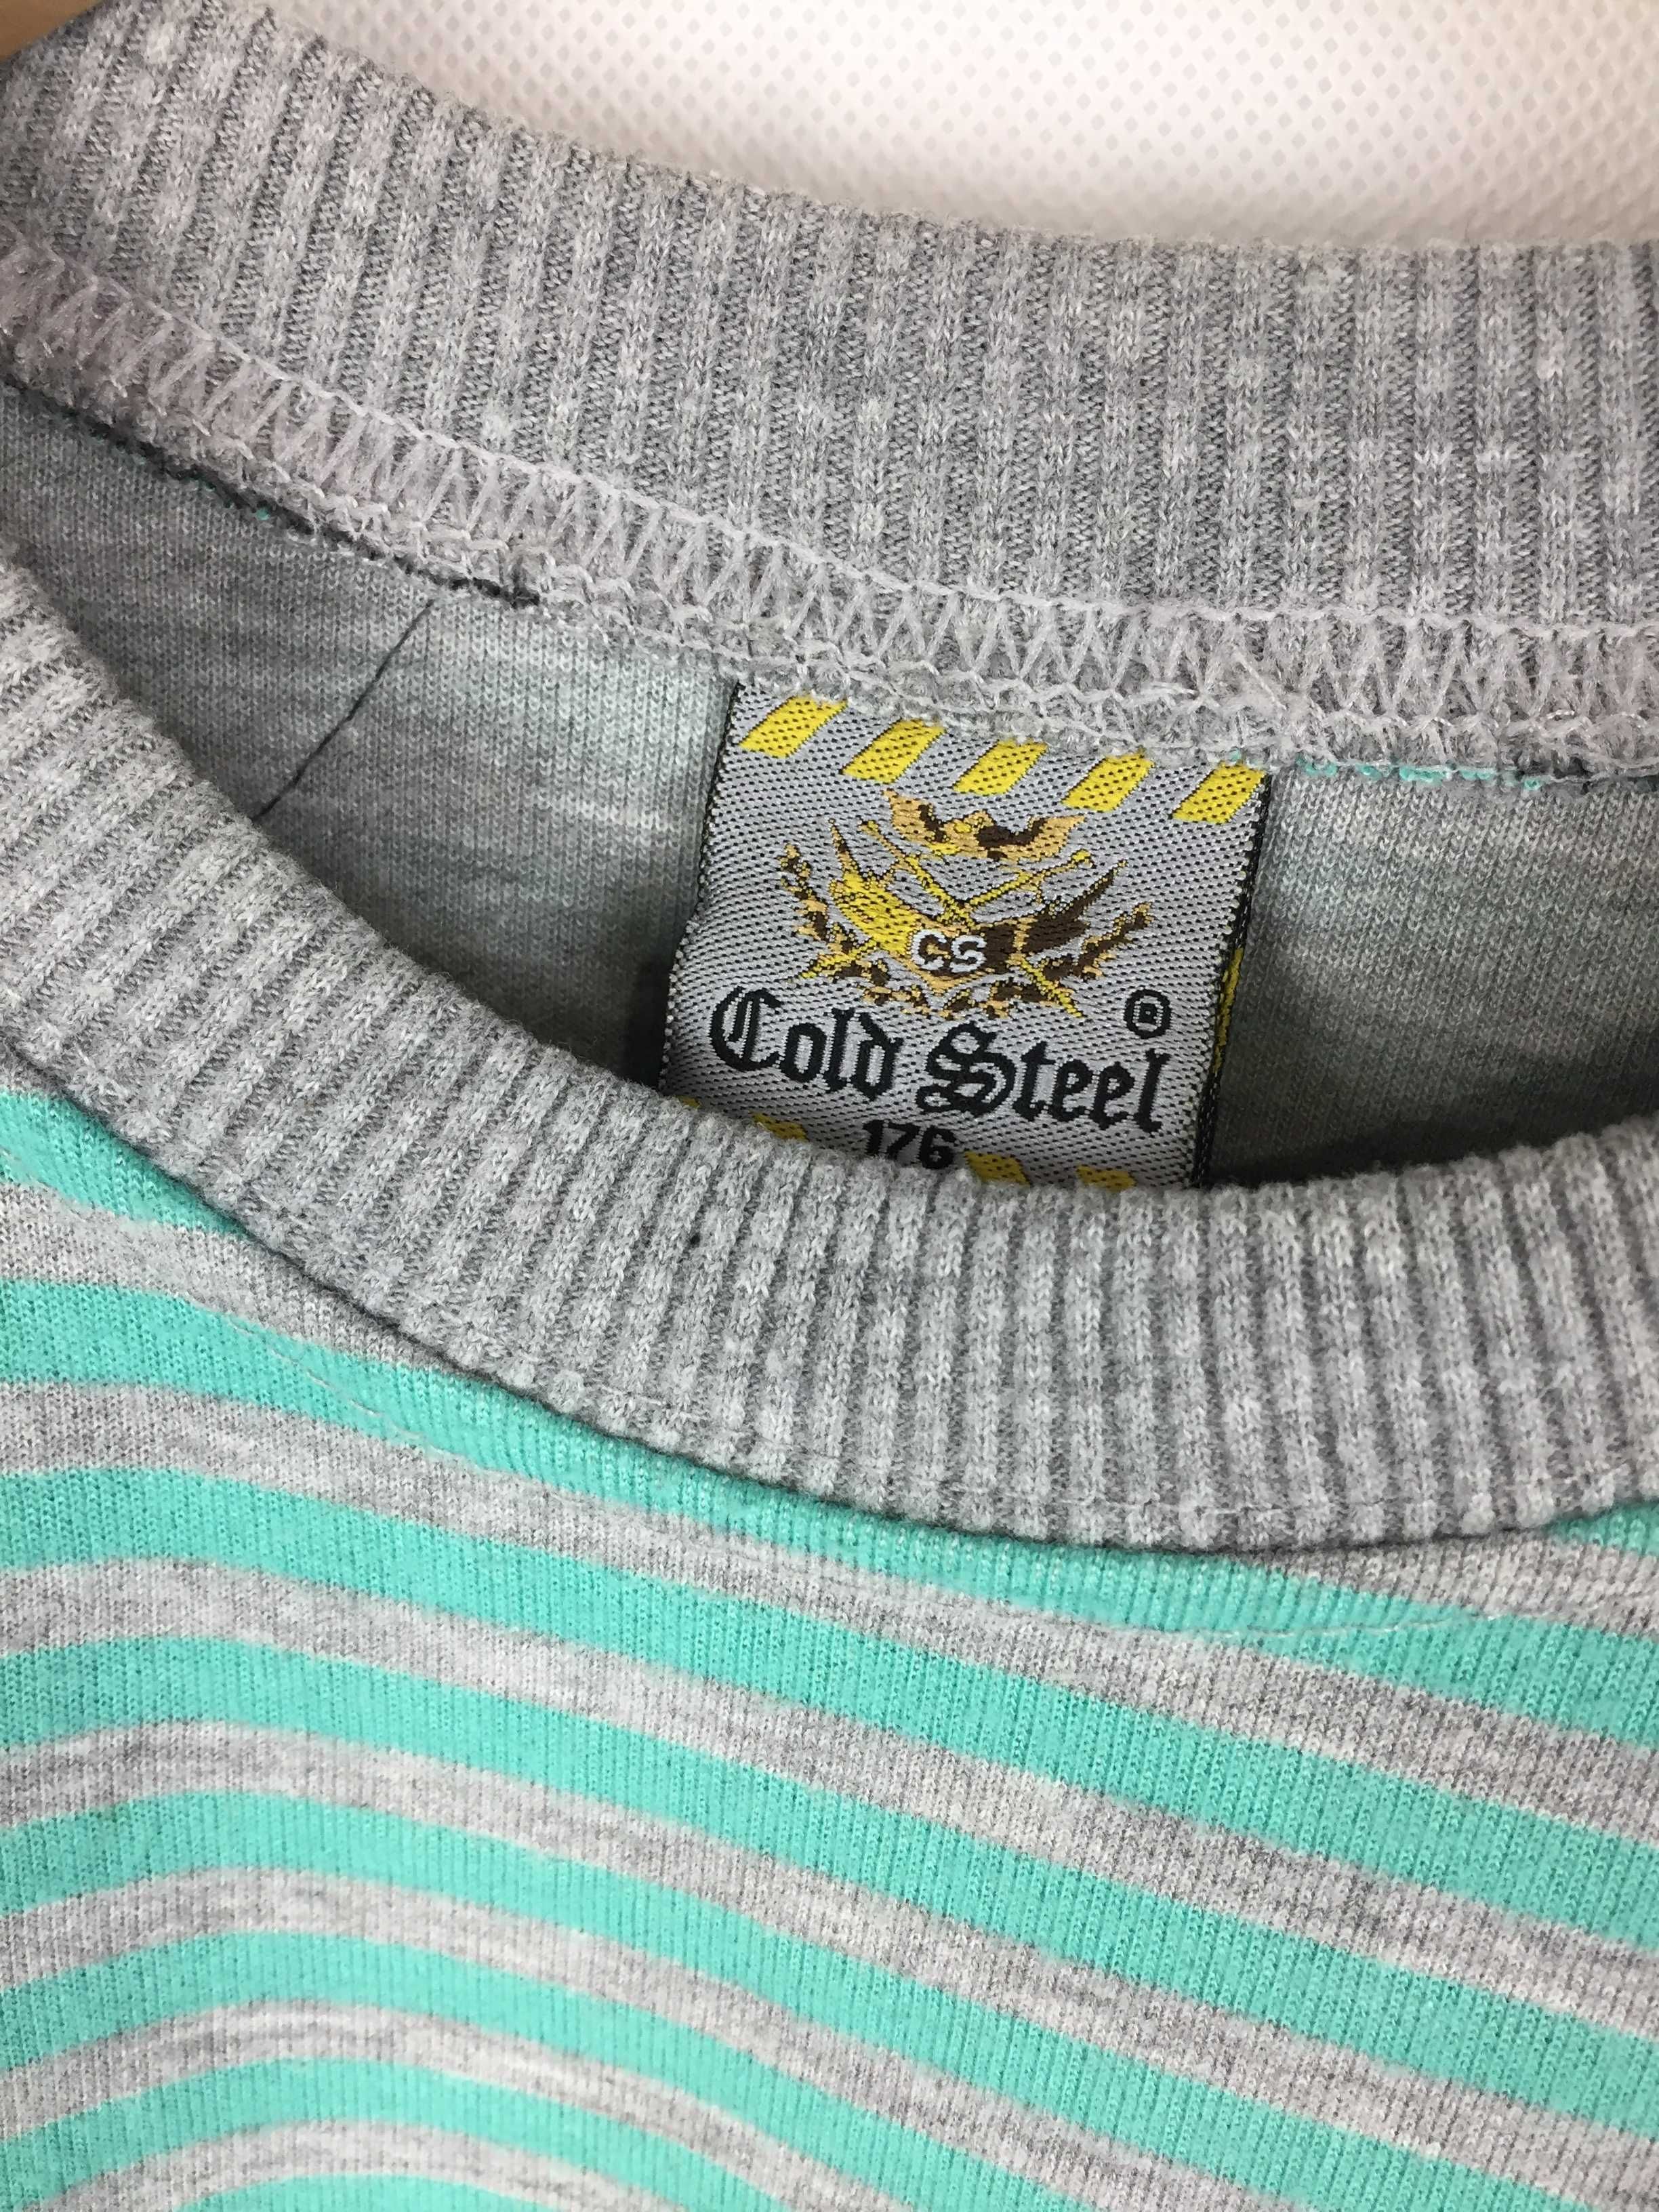 Bluza, sweter dla chłopca, Gold steel rozmiar 146